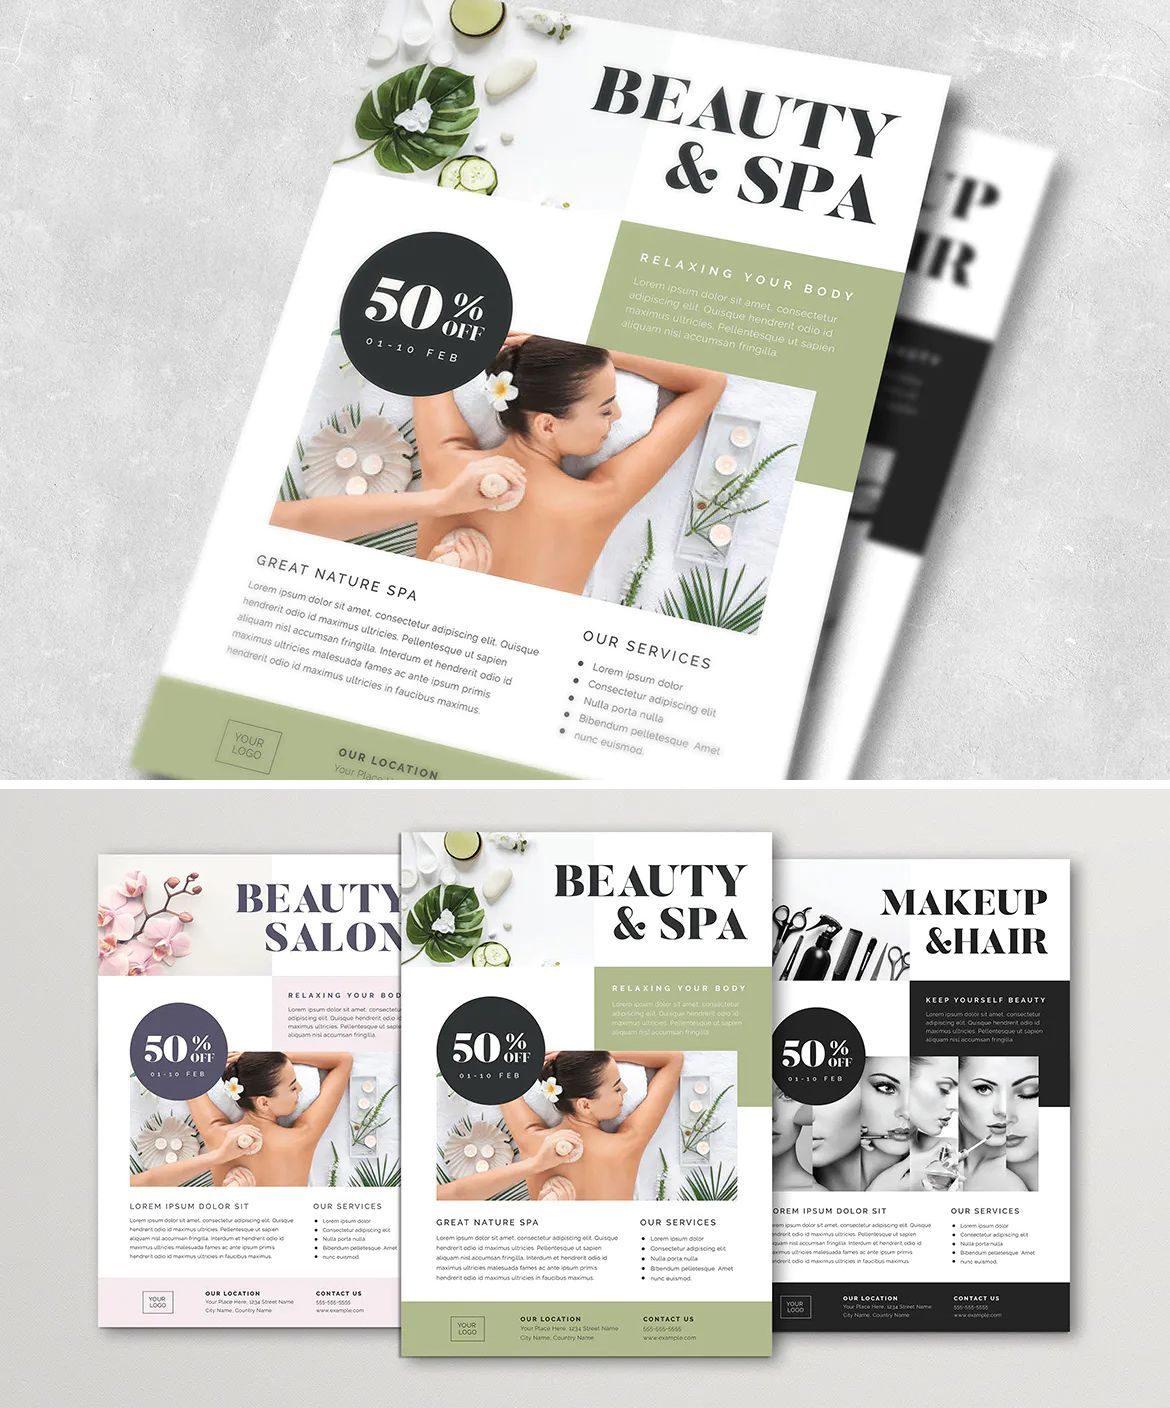 Beauty & Spa Flyer Layout - Beauty & Spa Flyer Layout -   12 beauty Spa flyer ideas